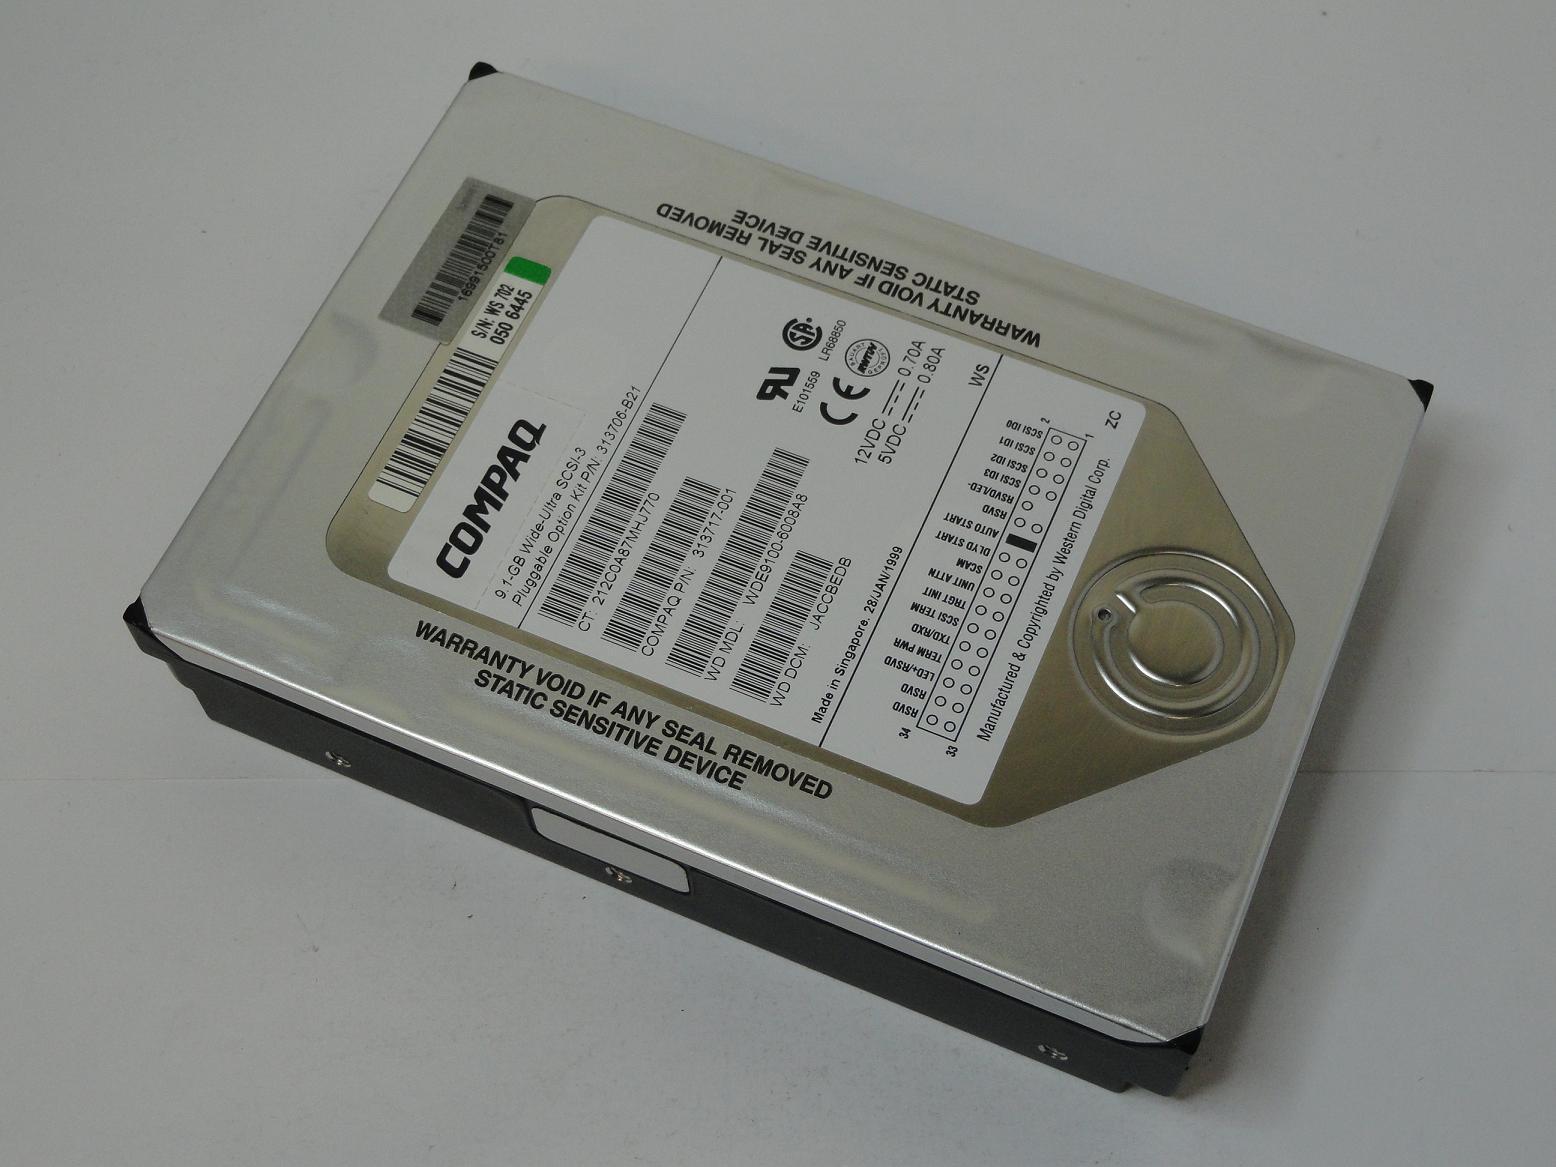 313717-001 - Compaq/WDigital 9GB SCA 80 HDD - Refurbished